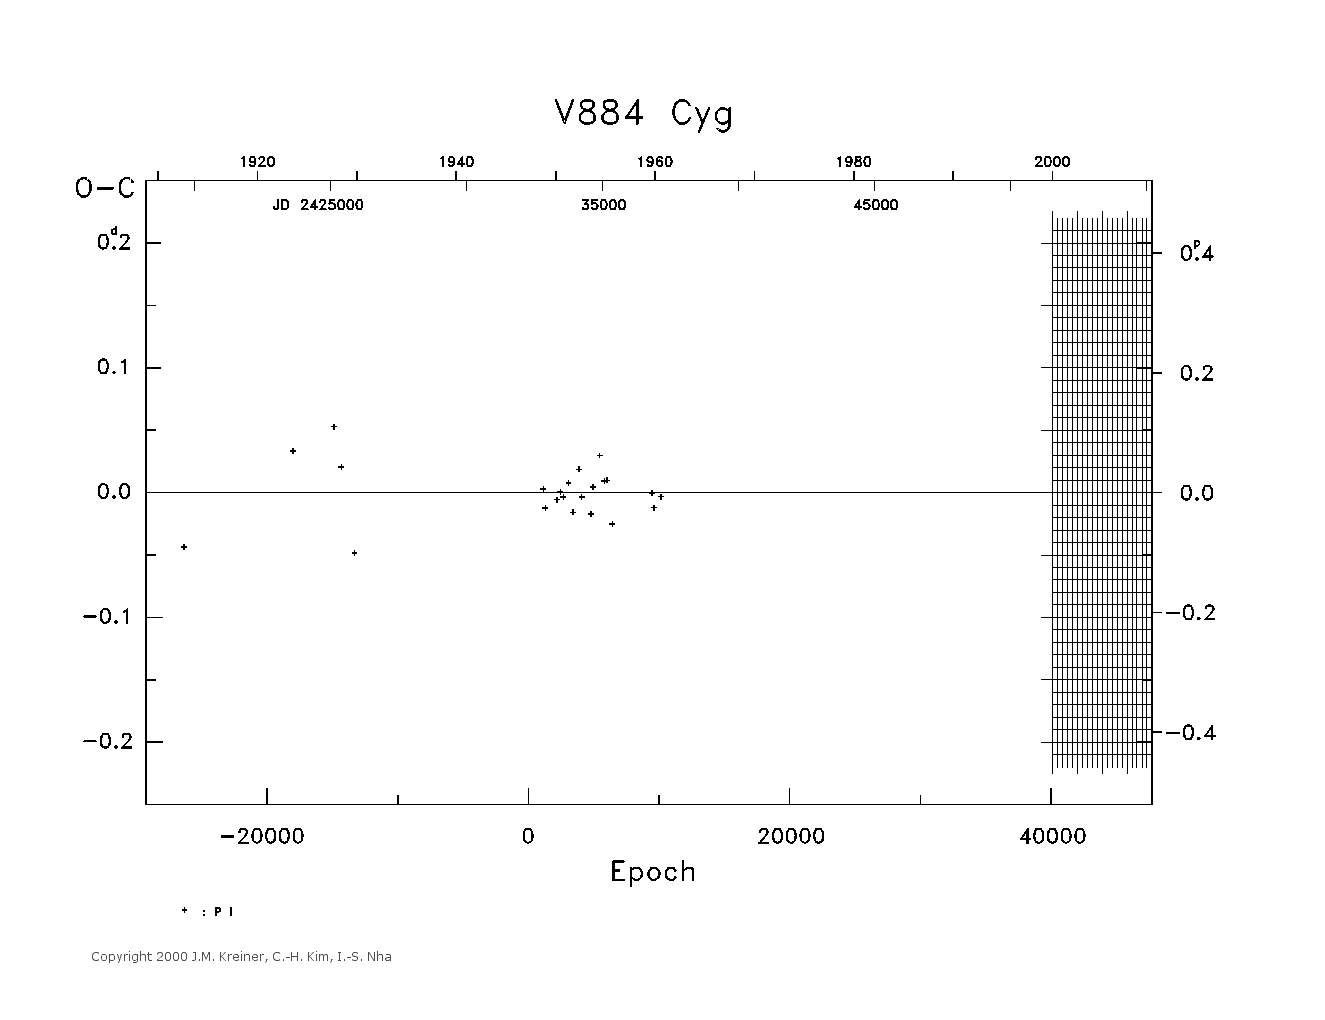 [IMAGE: large V884 CYG O-C diagram]